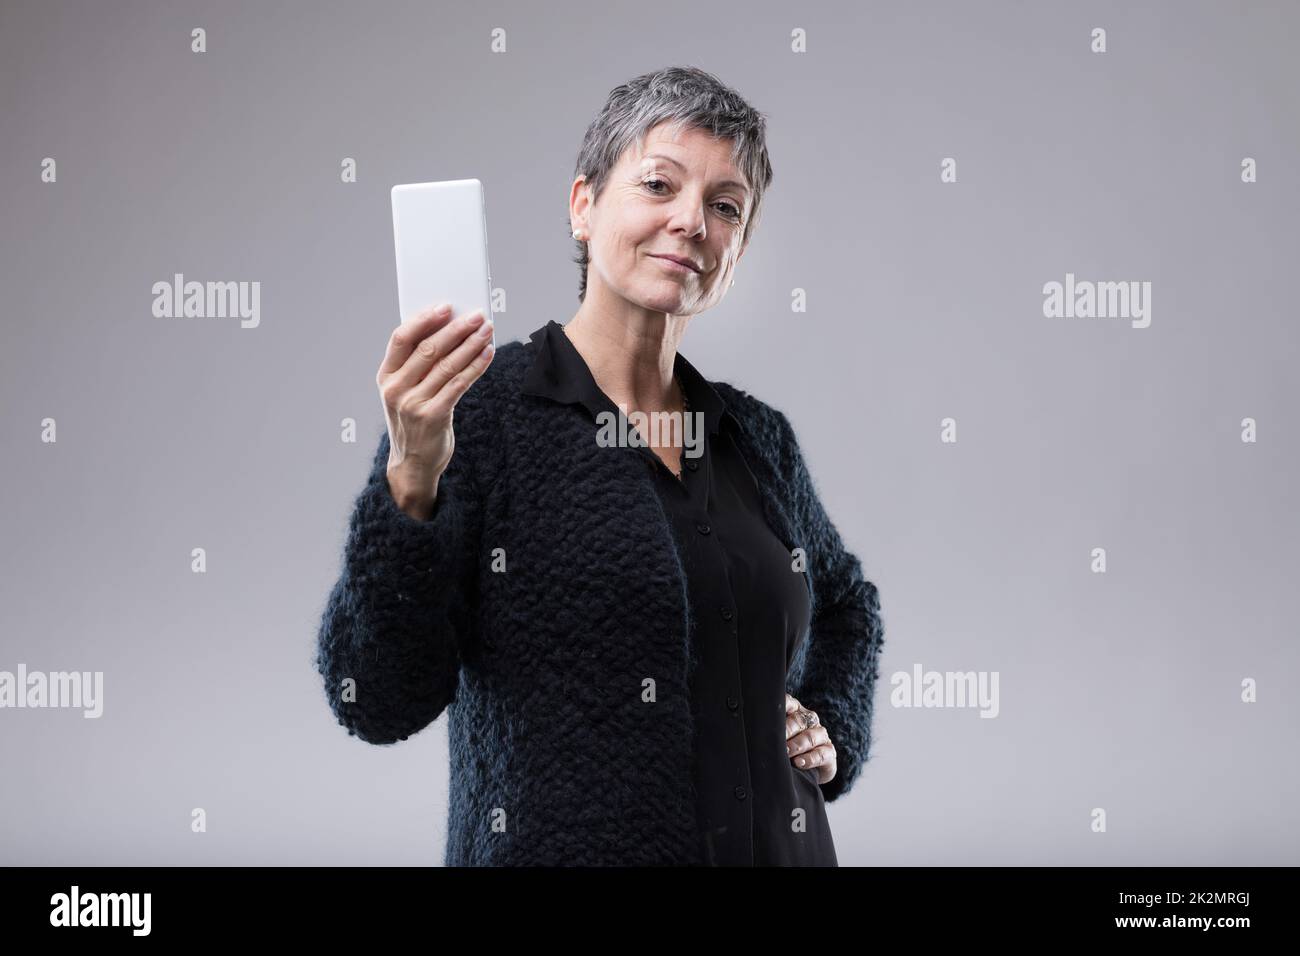 Une femme attirante et sûre d'elle-même qui tient un mobile Banque D'Images